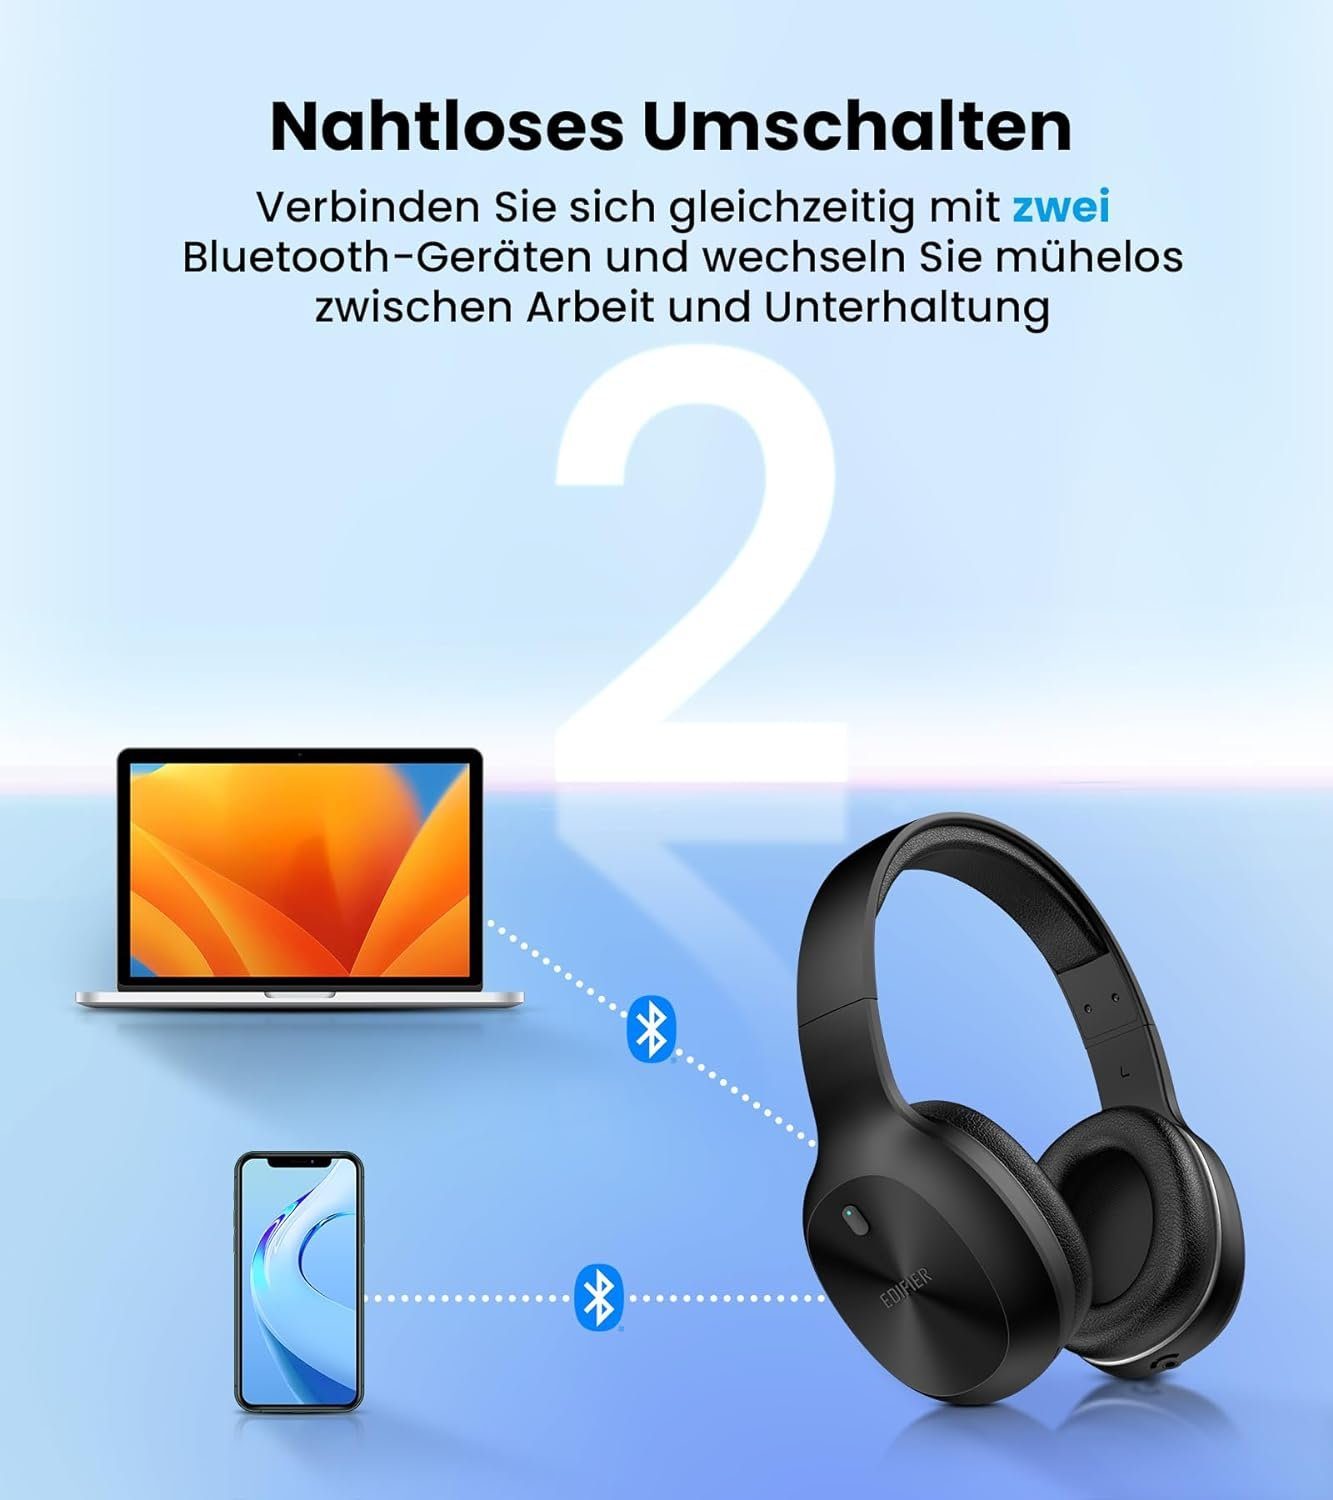 Edifier® Gaming-Headset (Over-Ear-Design weichen 30 40mm atmungsaktiven Wiedergabezeit Stunden Anrufe Kristallklare mit Bluetooth, Kunstleder-Ohrmuscheln, Treiber Verbindung)